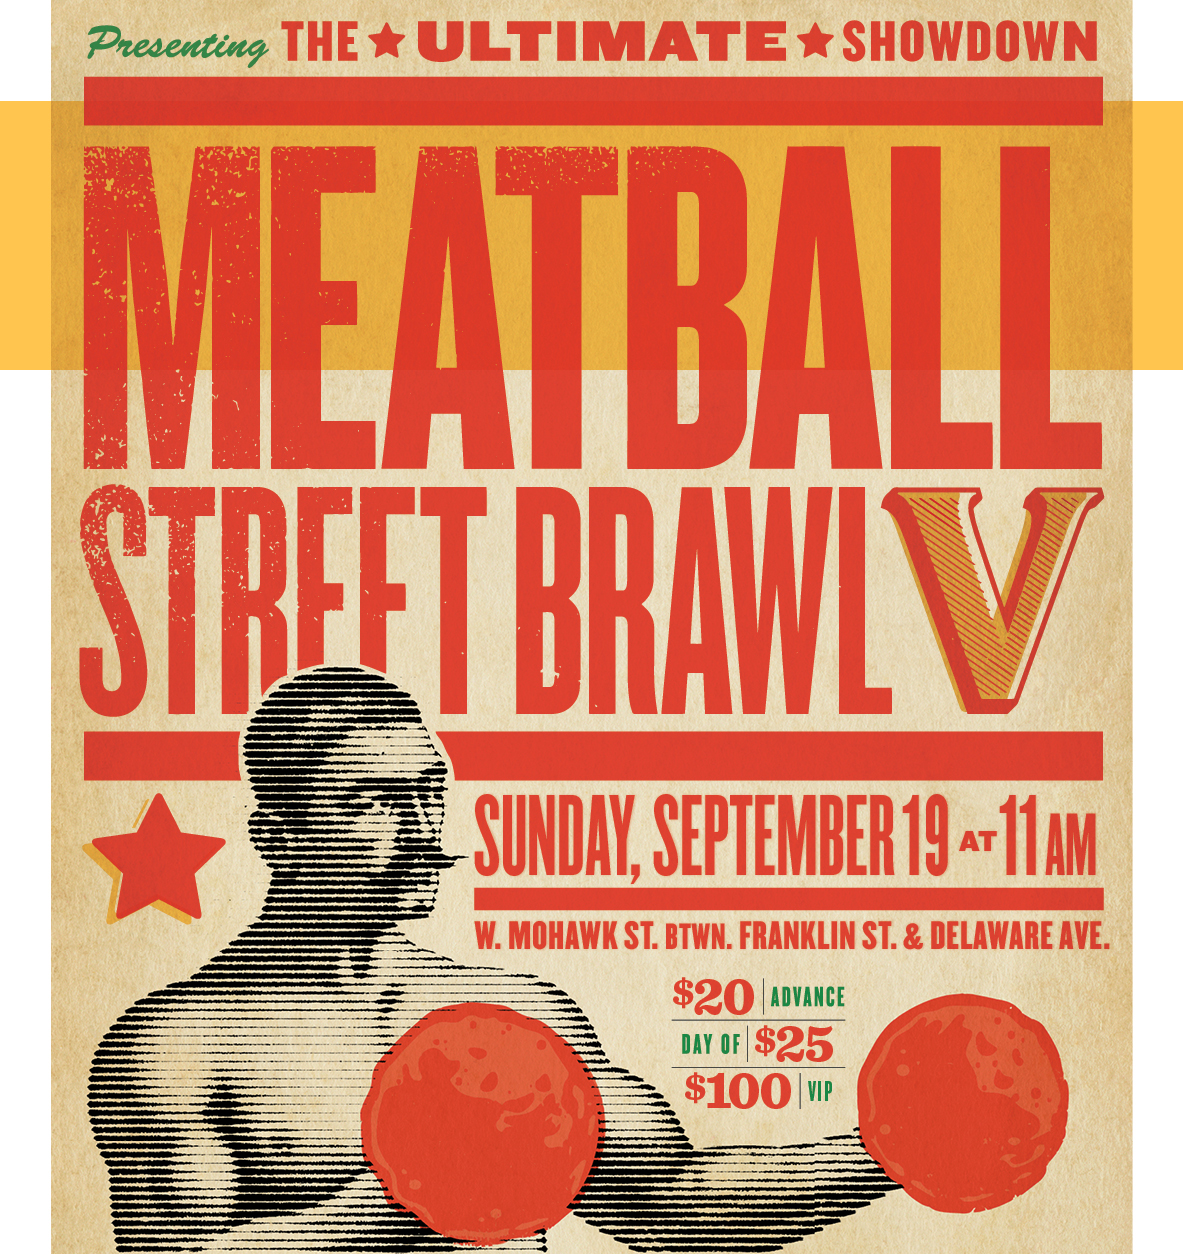 Meatball Street Brawl V